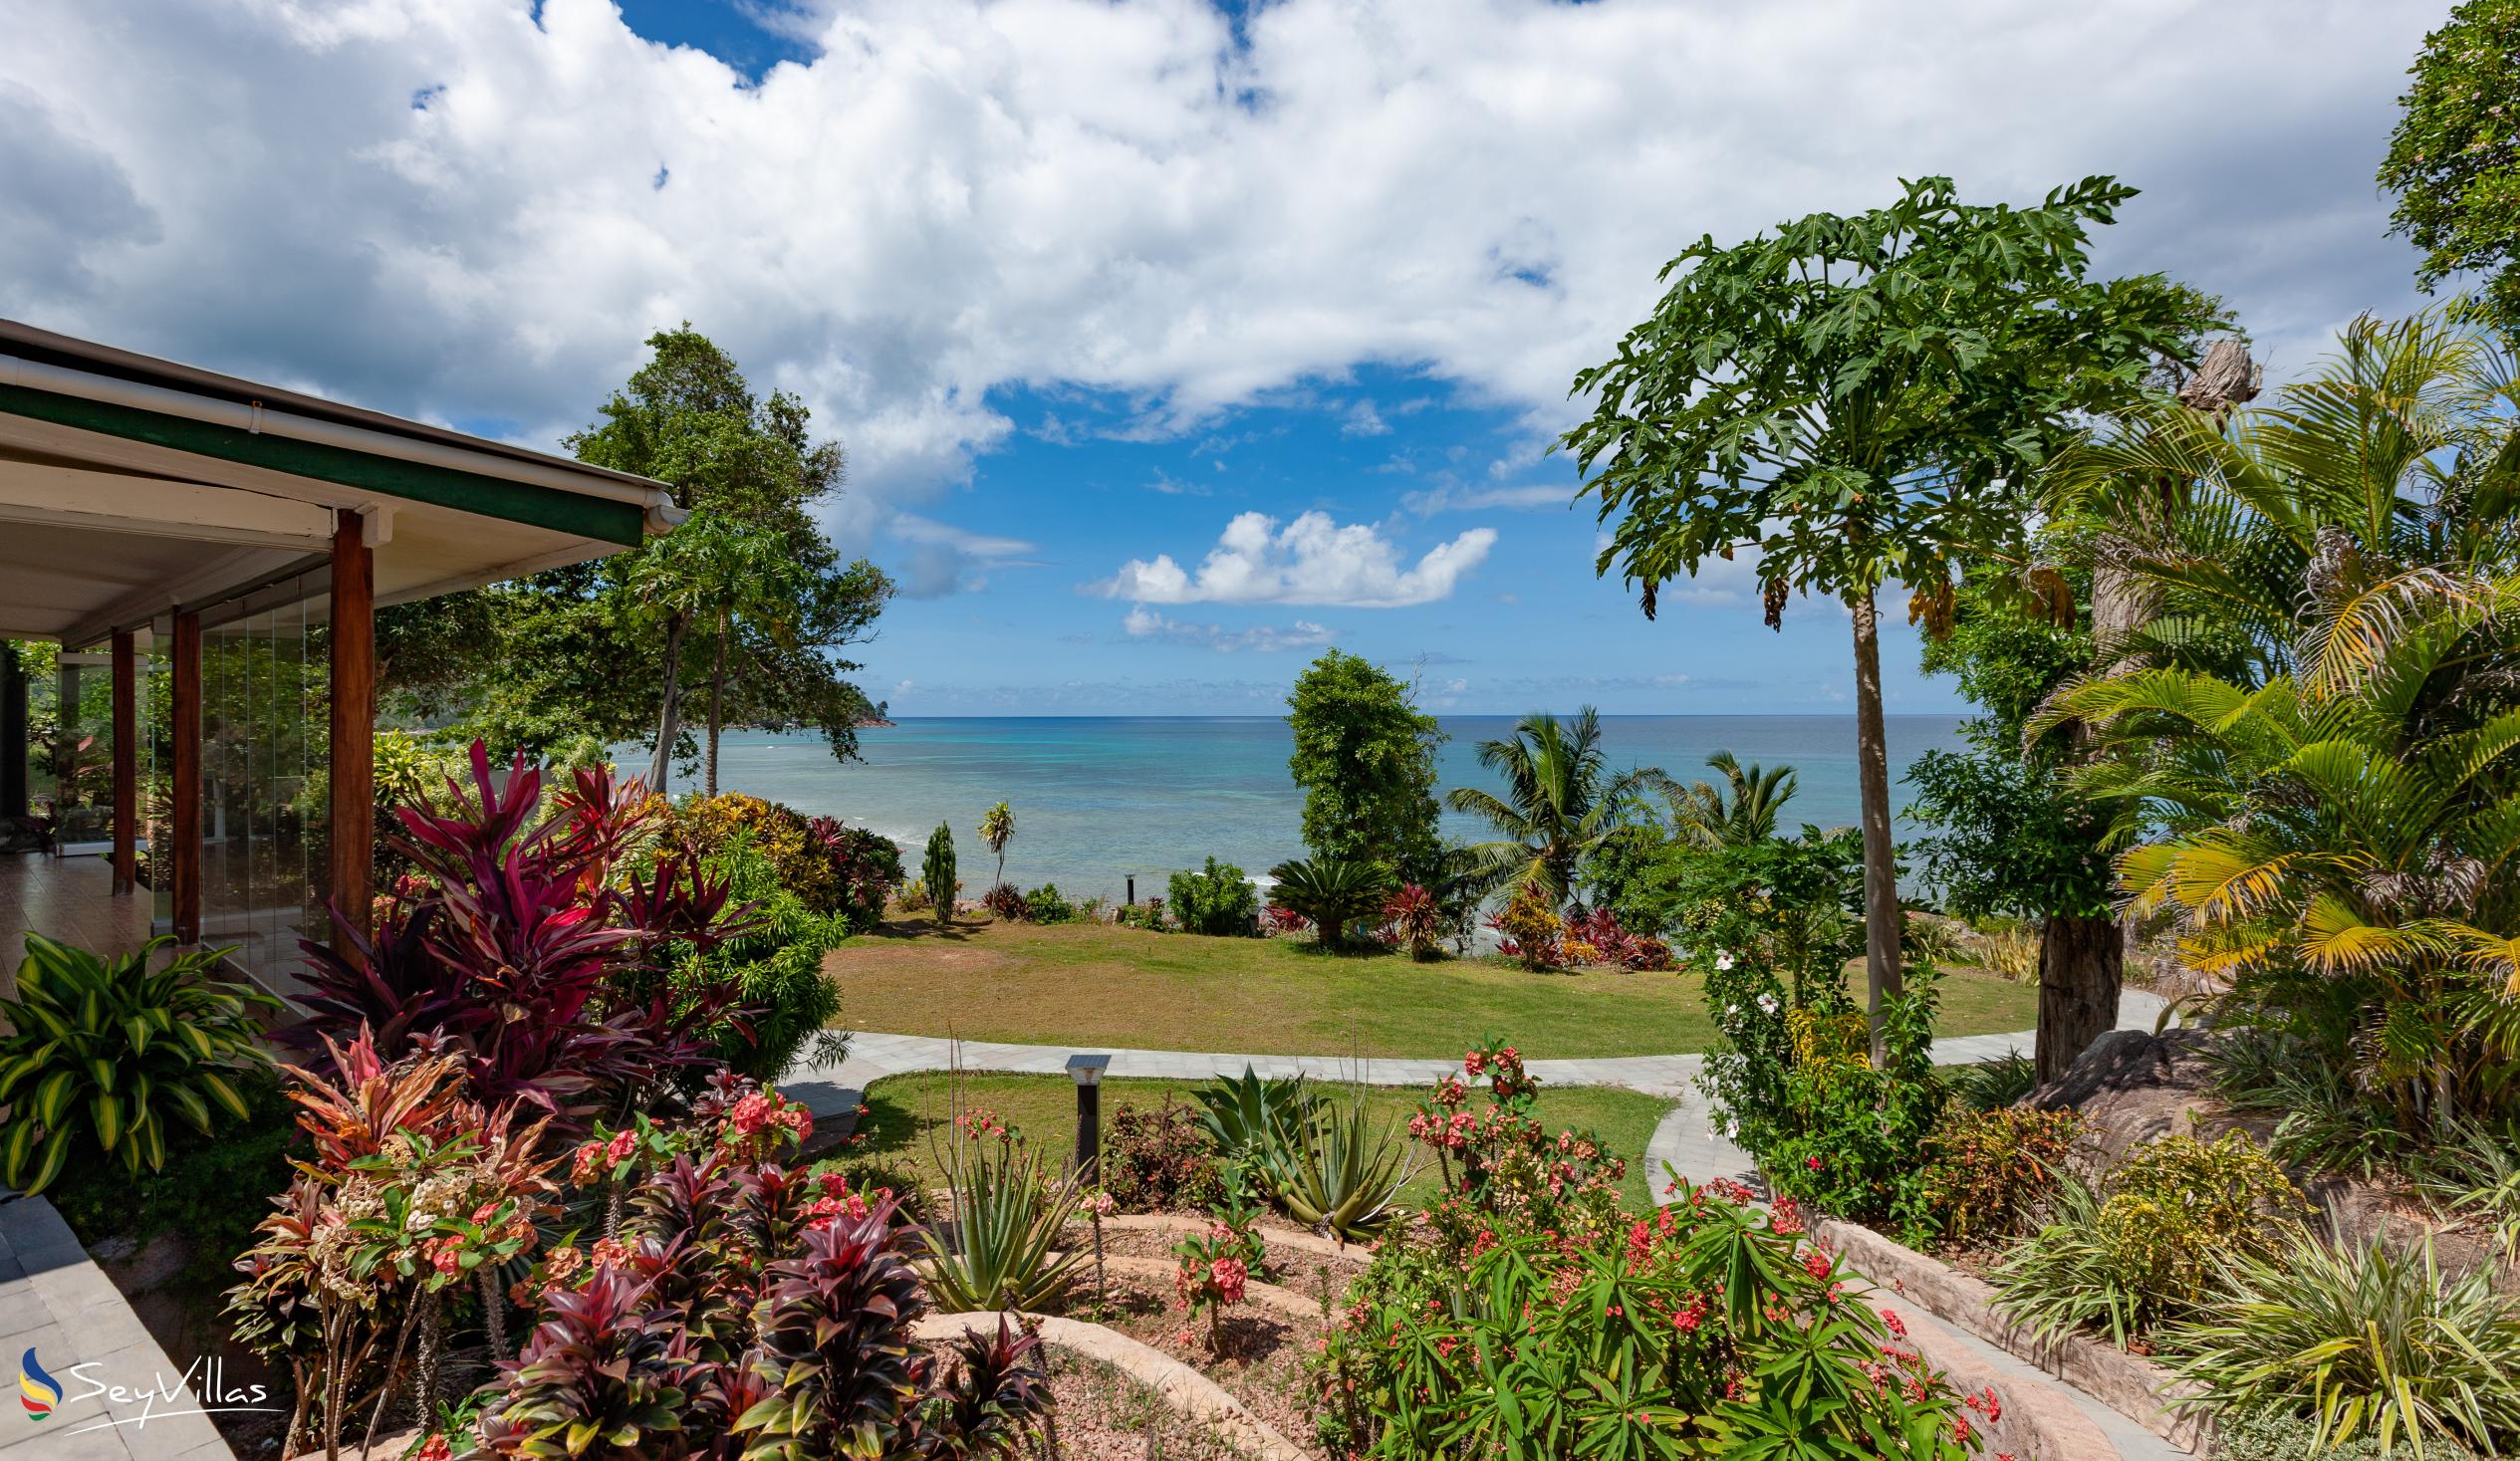 Foto 2: Cote Mer Villa - Aussenbereich - Praslin (Seychellen)